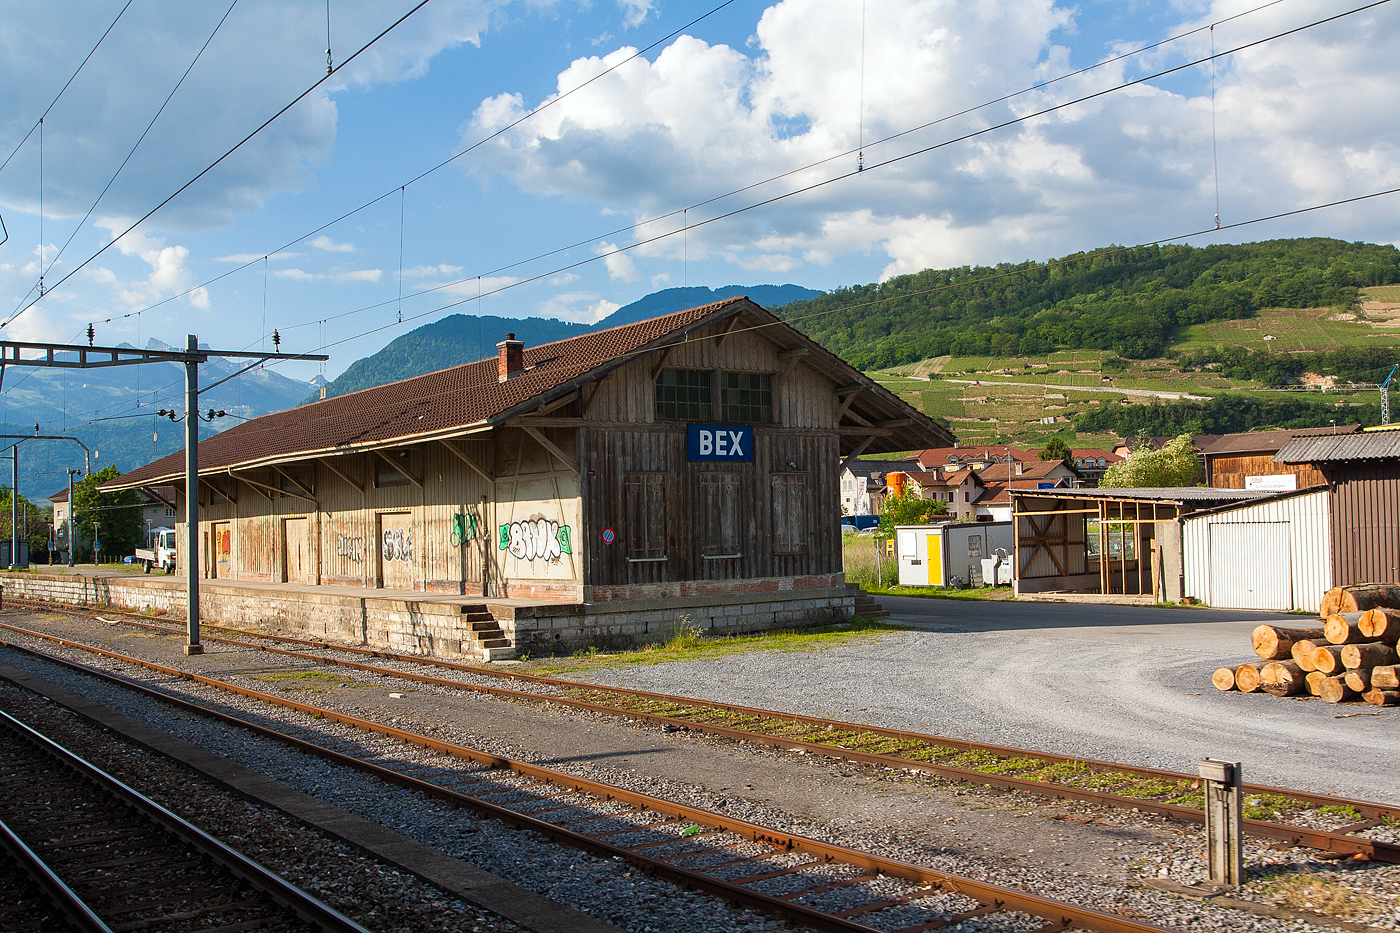 Der Gterschuppen von Bex, am 28 Mai 2012, frher gingen die Gleise der BVB hinter der Rampe bis an den Gterschuppen zur bergabe an die SBB.

Bild aus dem Zug heraus.
